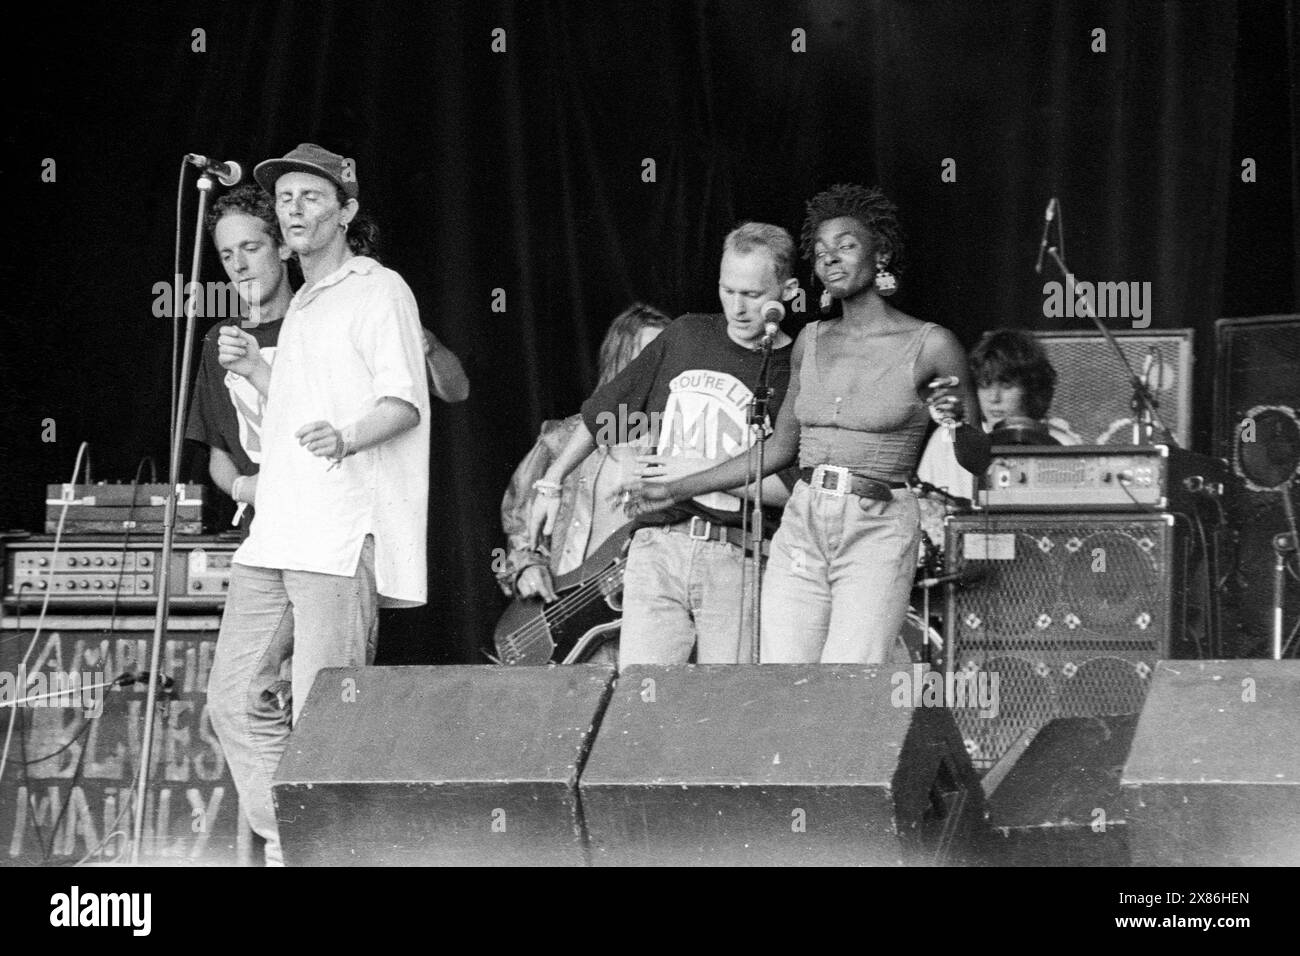 MOONFLOWERS, GLASTONBURY FESTIVAL, 1992: Die Band The Moonflowers aus West Country spielt am 26. Juni 1992 auf der NME Stage beim Glastonbury Festival in Pilton Farm, Somerset, England. INFO: Moonflowers ist eine in Bristol lebende Band, die für ihre eklektische Mischung aus psychedelischen Rock- und Folk-Einflüssen bekannt ist. In den 1990er Jahren wurden sie mit ihren lebhaften Auftritten und ihrem innovativen Sound zu einem bemerkenswerten Teil der lokalen Musikszene. Stockfoto